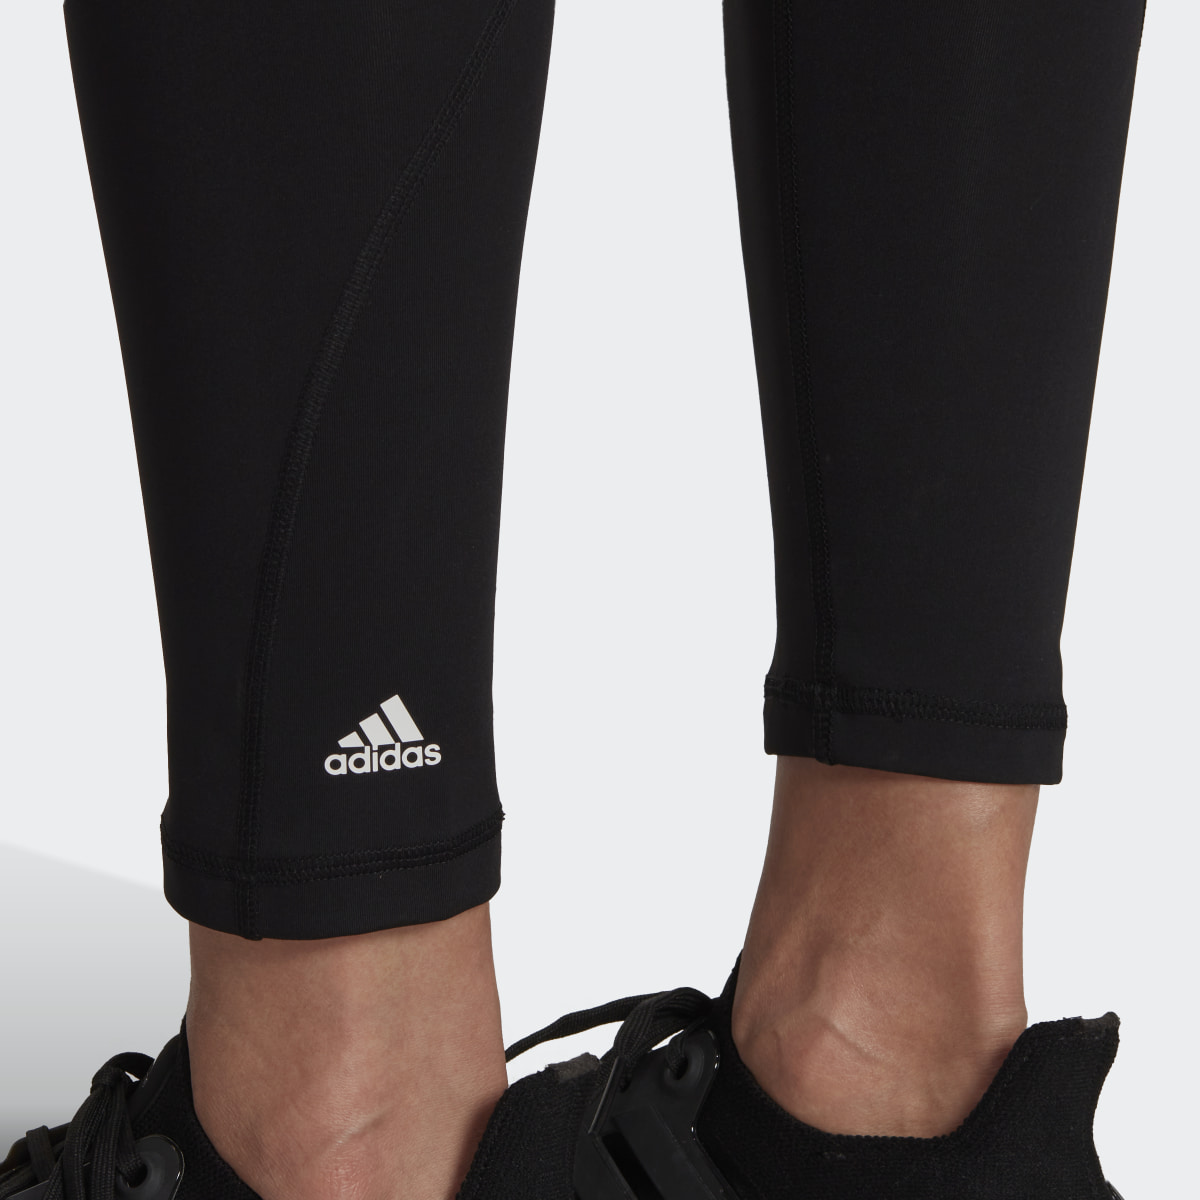 Adidas Optime Training Period-Proof 7/8 Leggings. 6